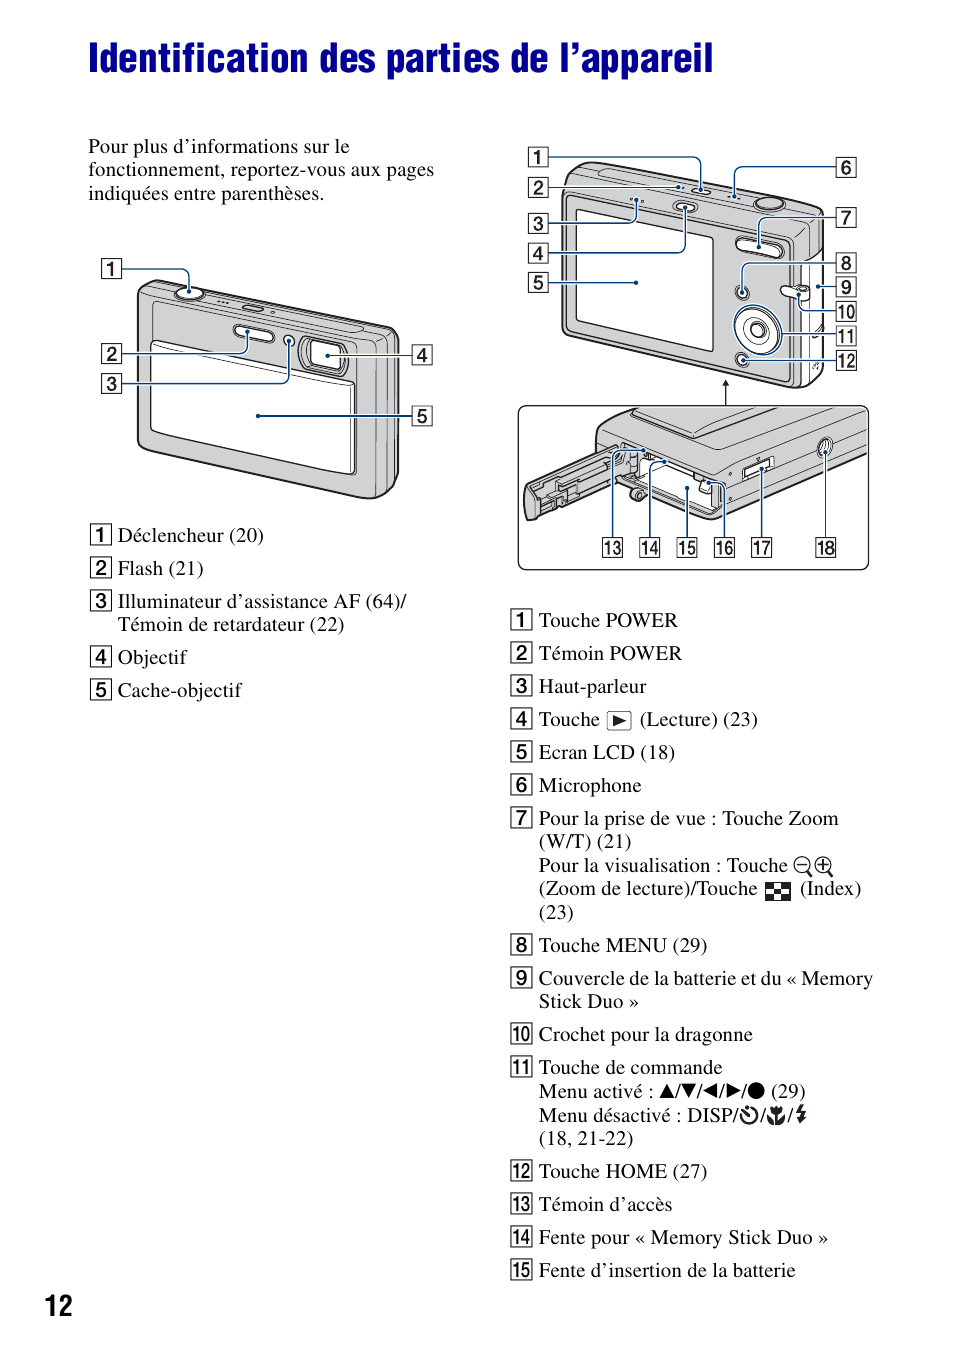 Identification des parties de l’appareil | Sony DSC-T20 Manuel d'utilisation | Page 12 / 122